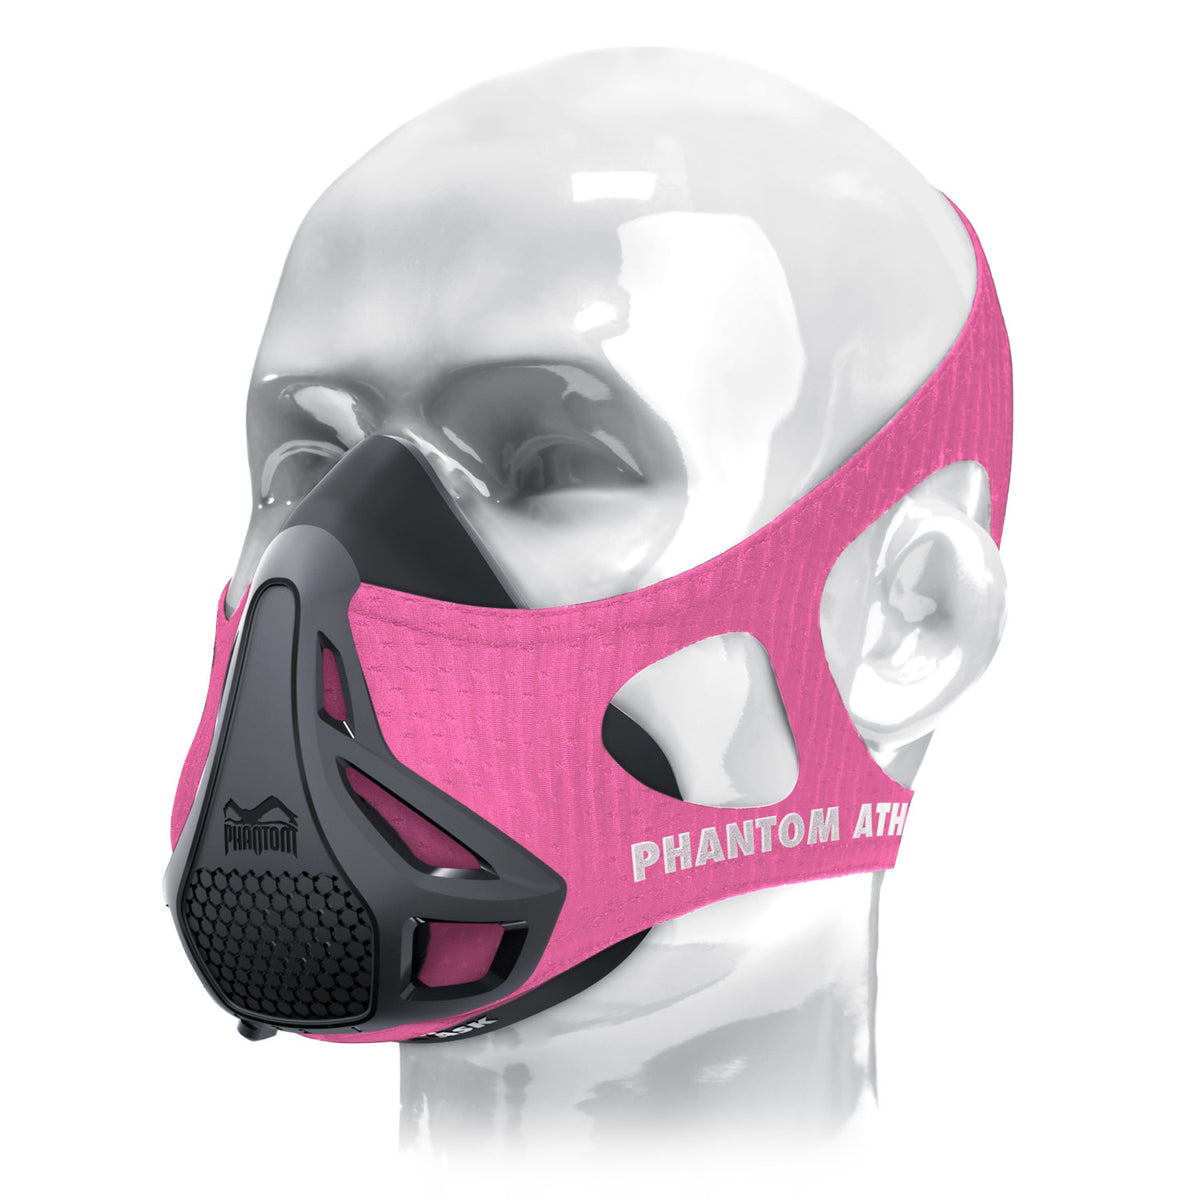 Die Phantom Trainingsmaske. Das Original. Patentiert und ausgezeichnet um deine Fitness auf das nächste Level zu heben. Jetzt in Pink.